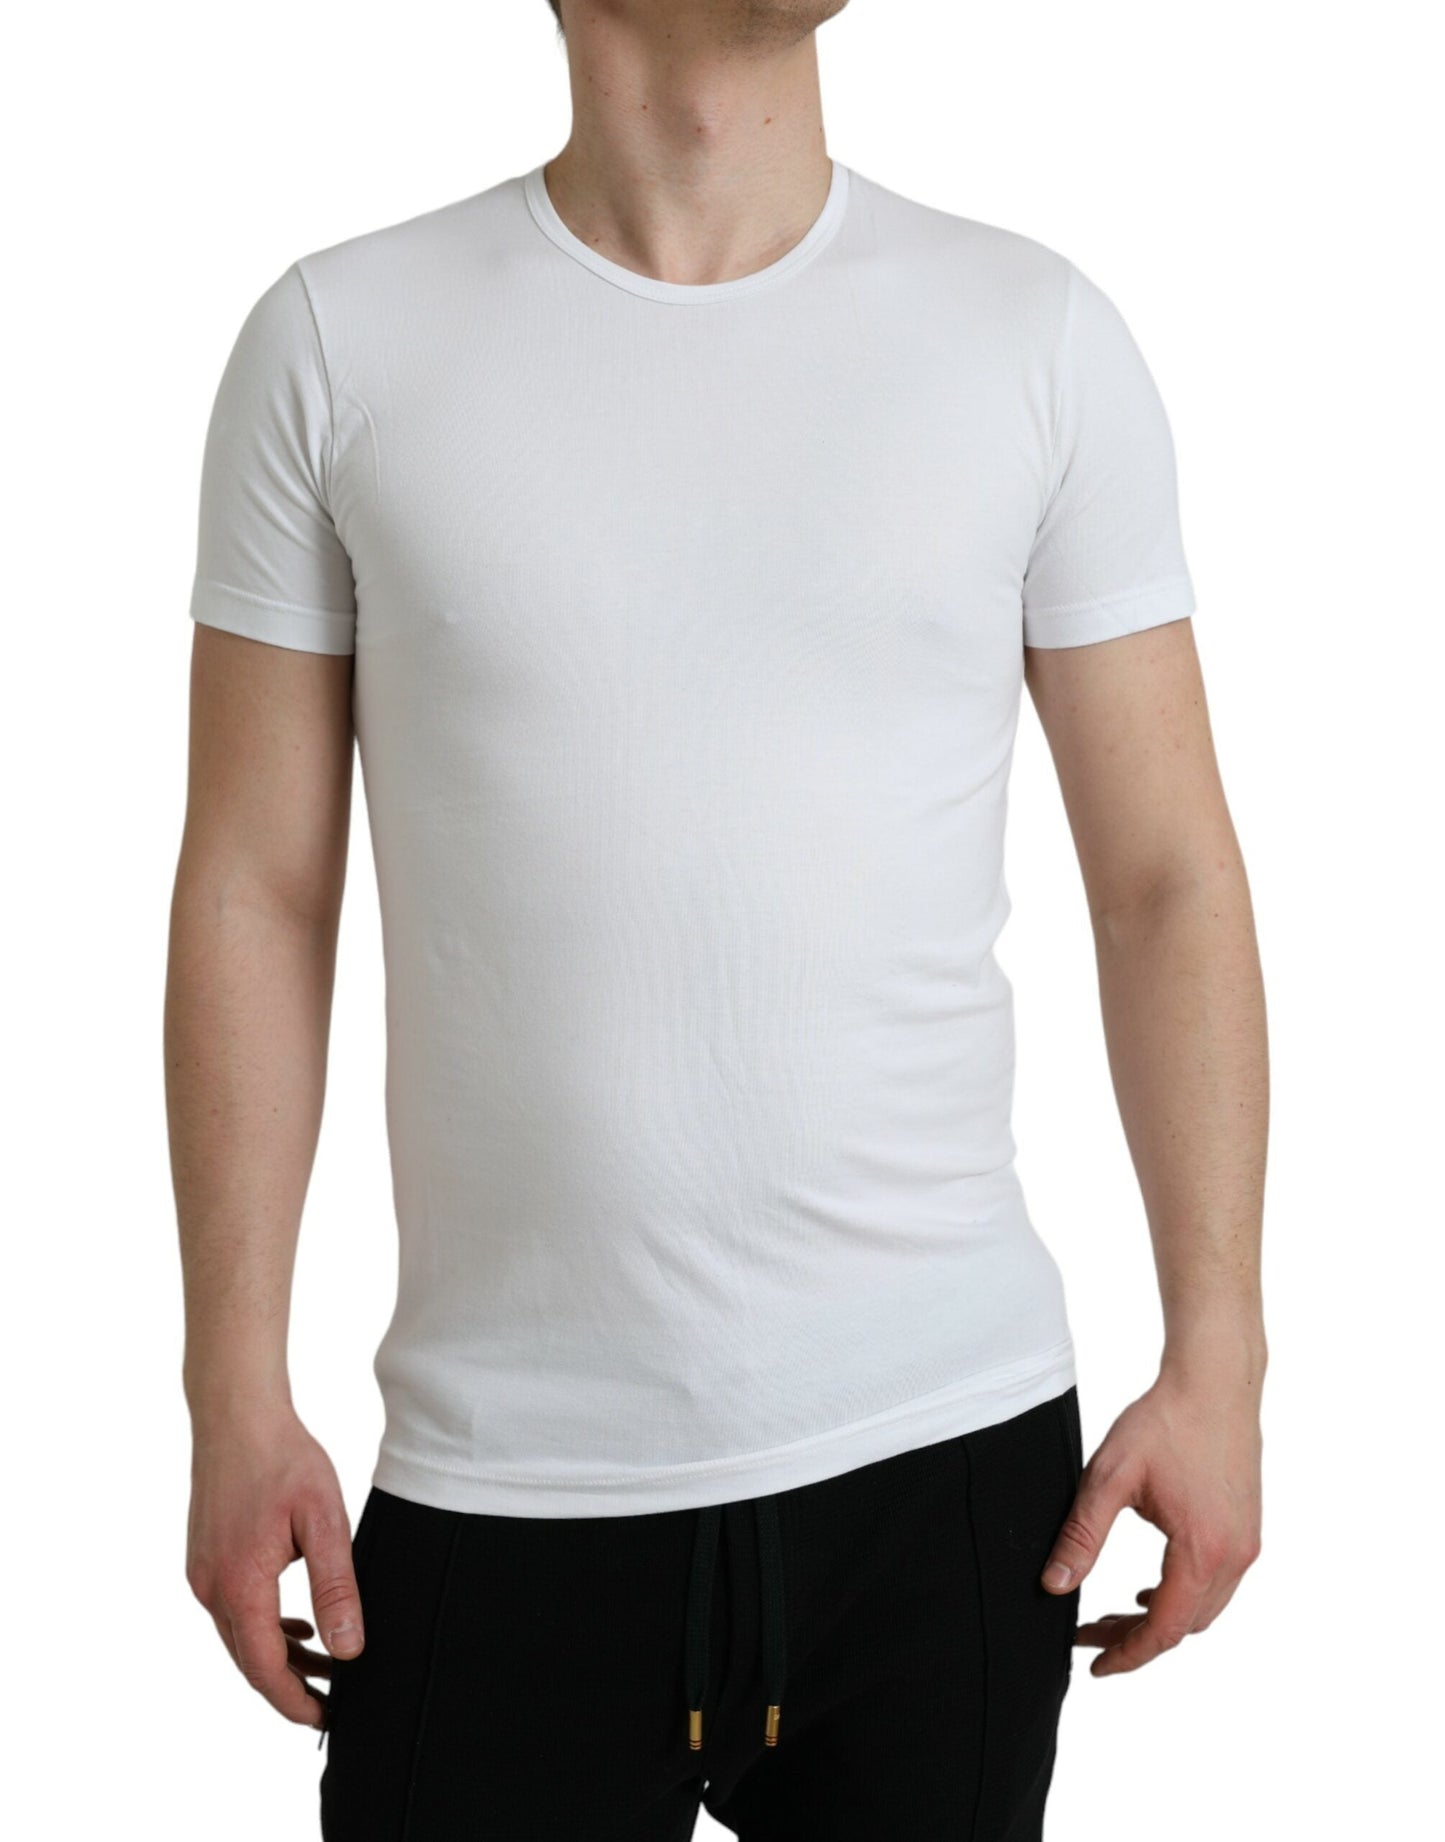 Dolce & Gabbana White Cotton Round Neck Crewneck Underwear T-shirt | Fashionsarah.com